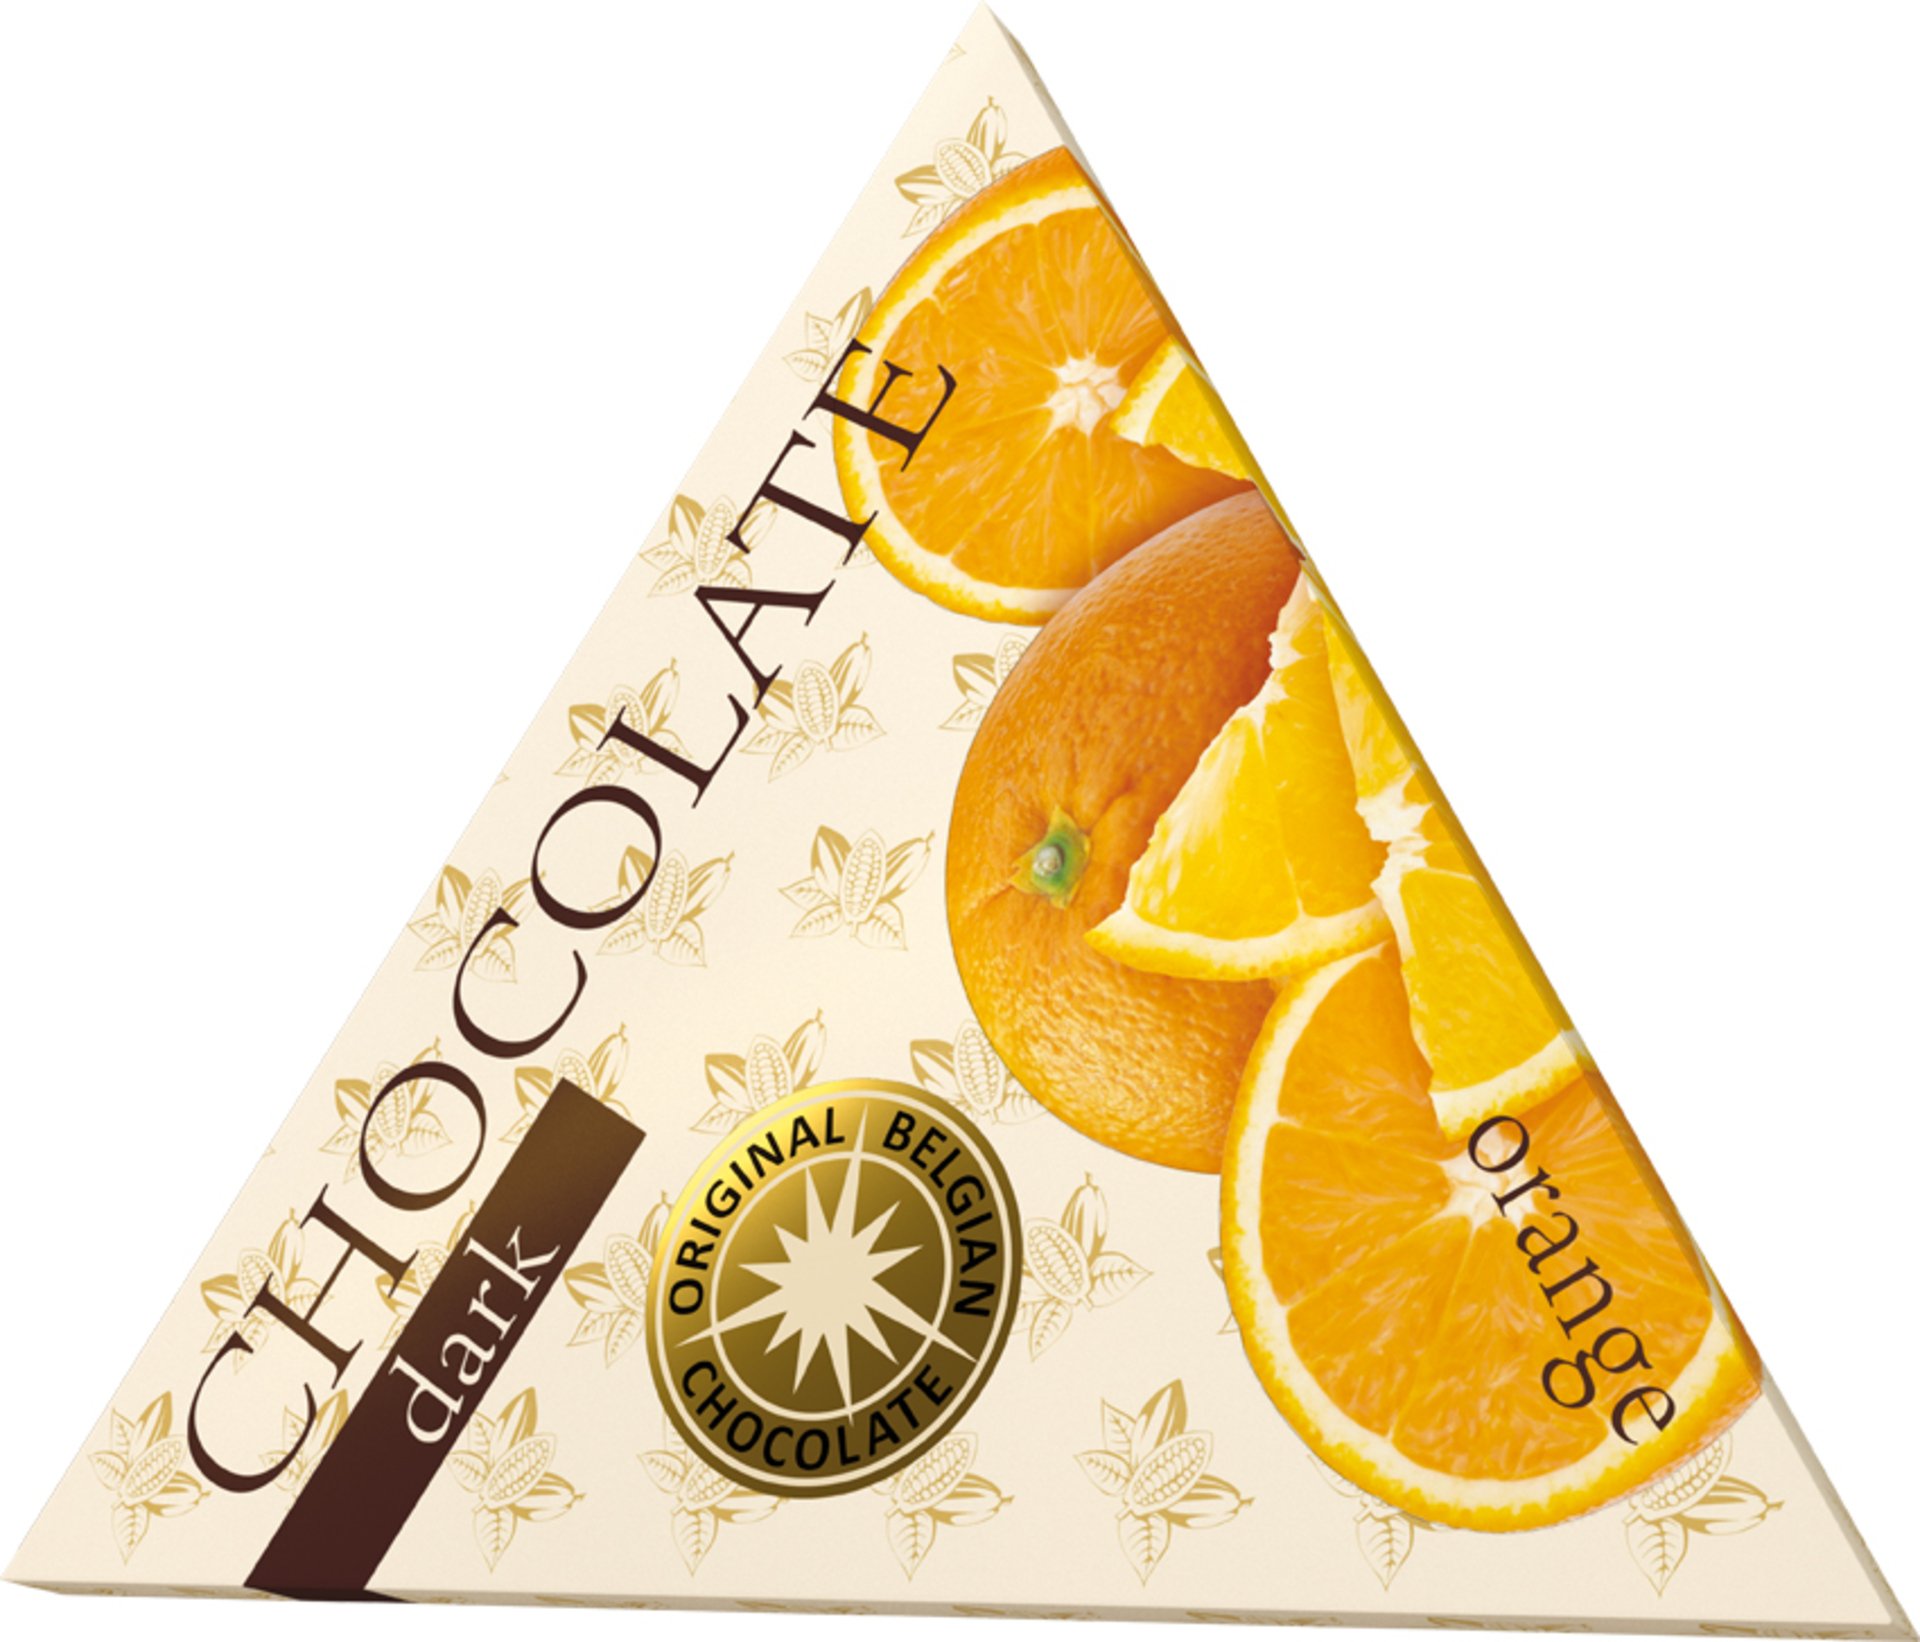 The Chocolate Trojuholníková horká čokoláda s pomarančom 50 g